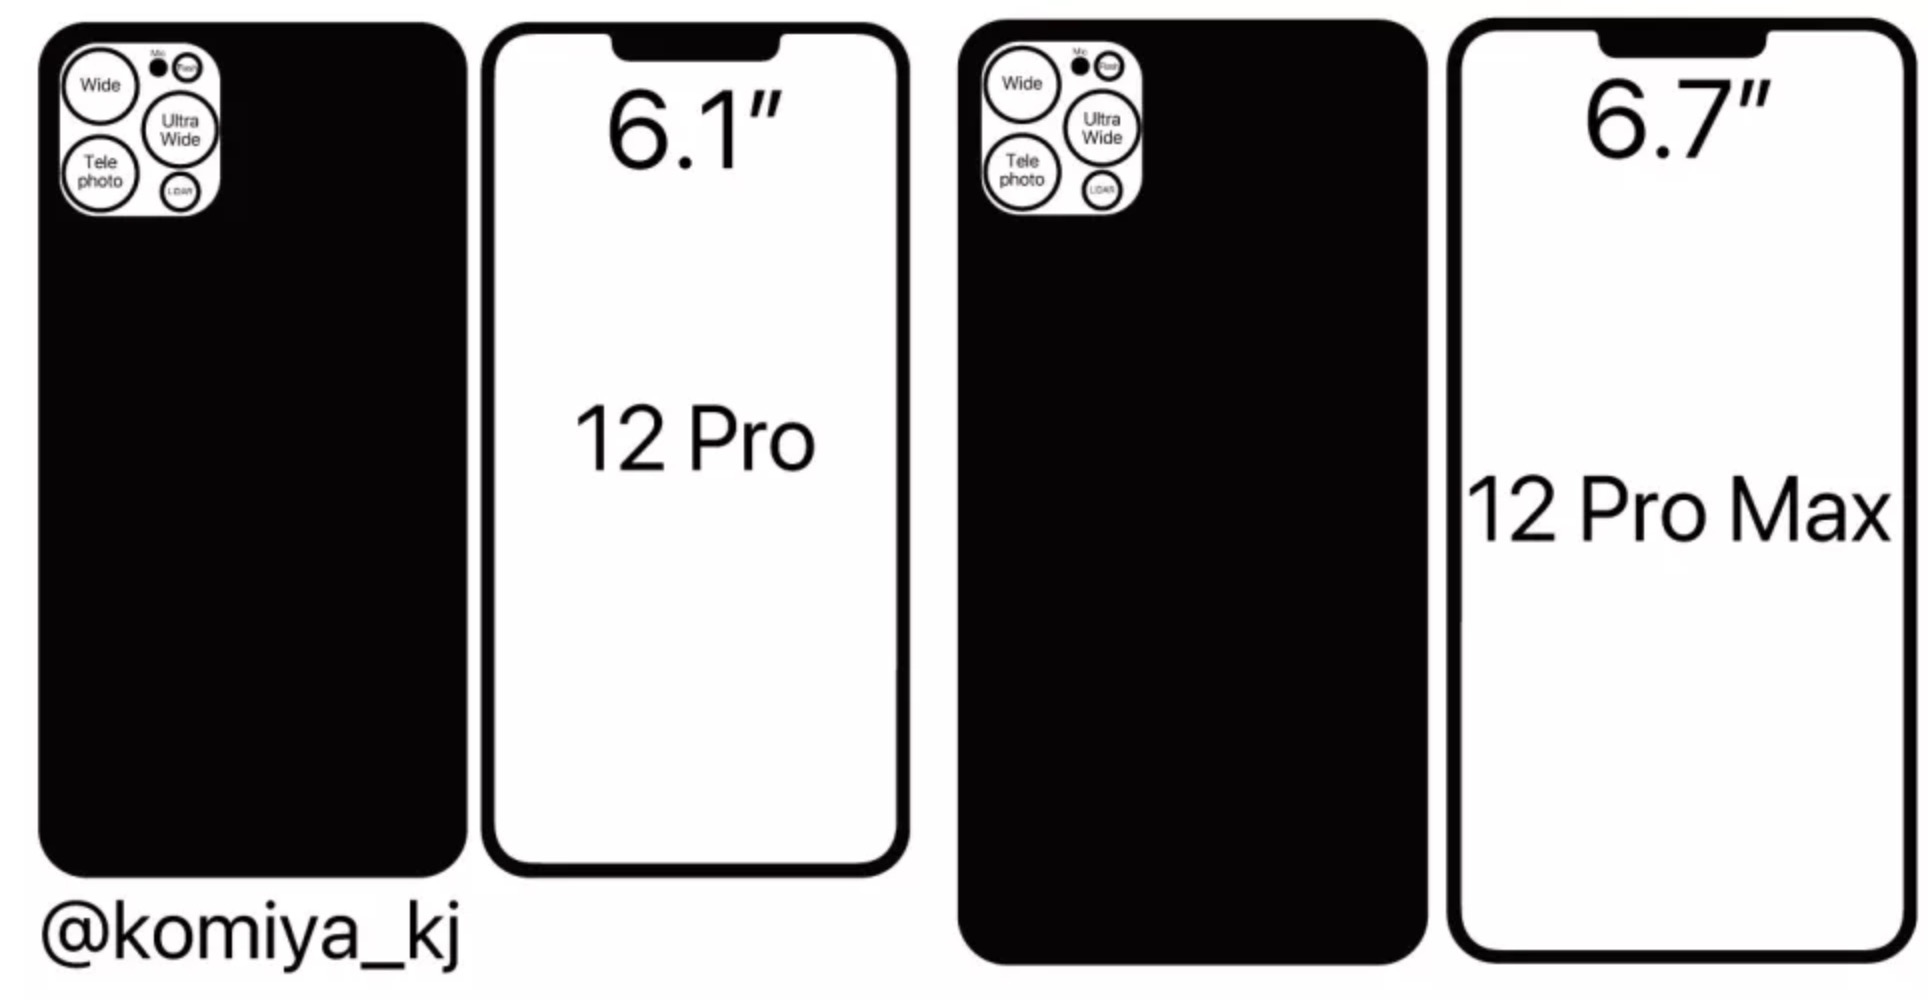 Айфон 13 про в см. Iphone 12 Pro Max габариты. Айфон 12 про Макс спереди. Apple iphone 13 Pro Max габариты. Iphone 13 Pro Размеры.